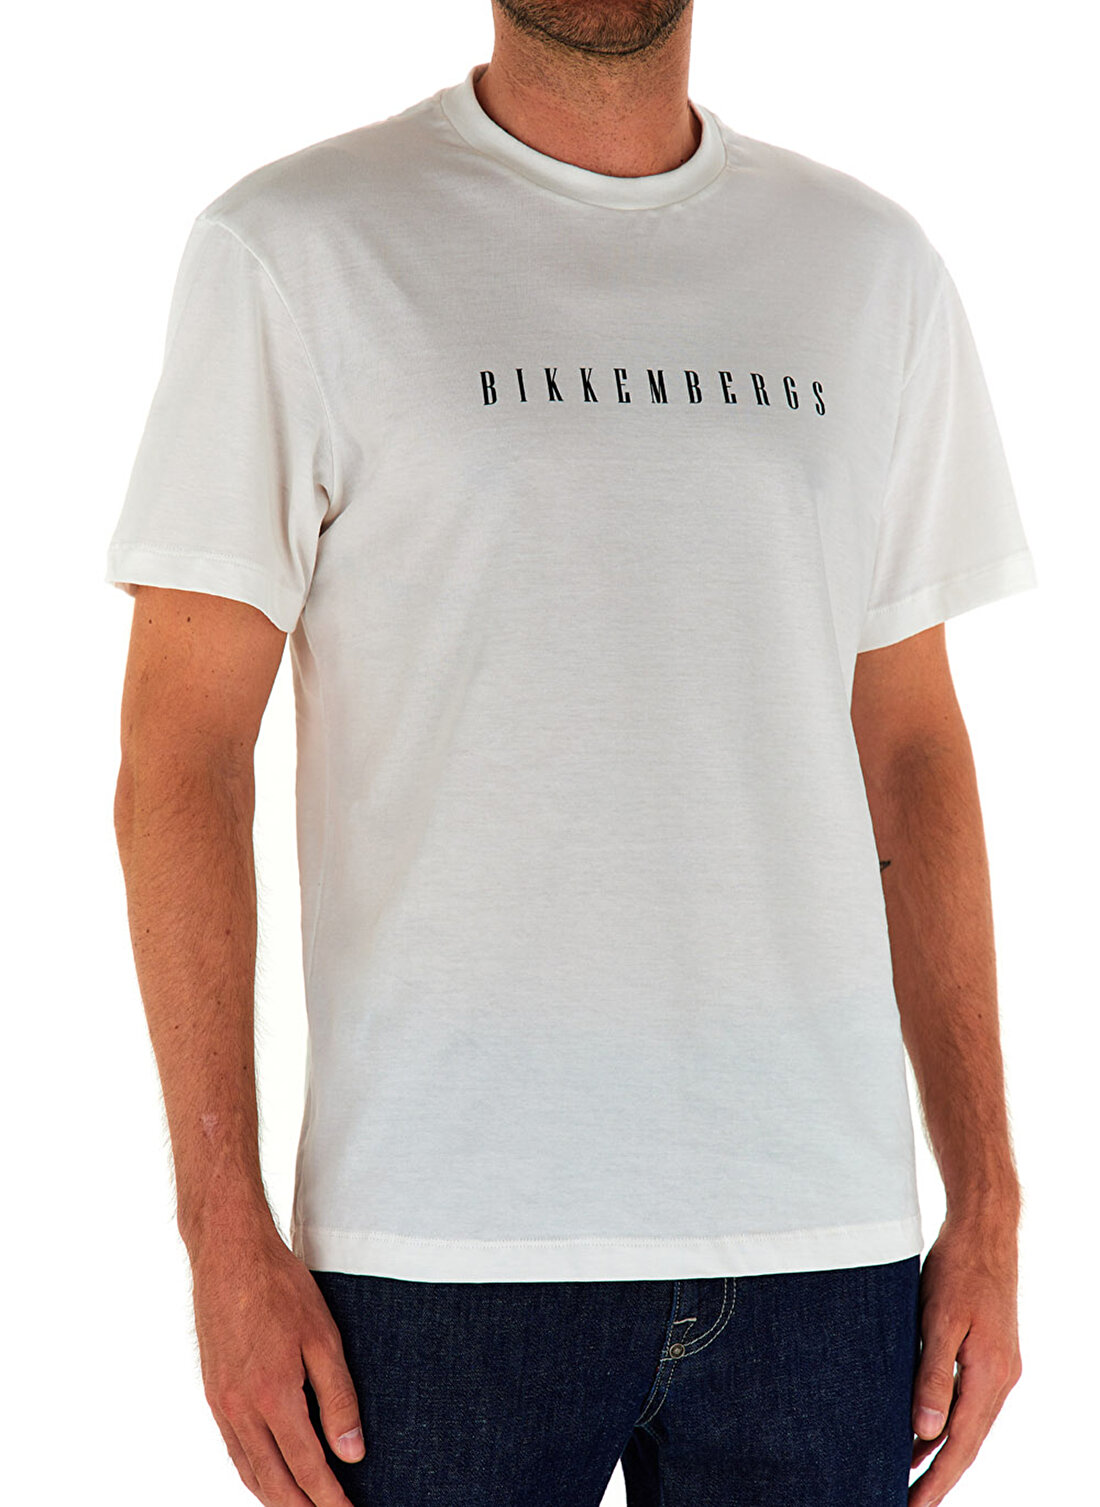 Bikkembergs Beyaz Erkek T-Shirt C 4 114 25